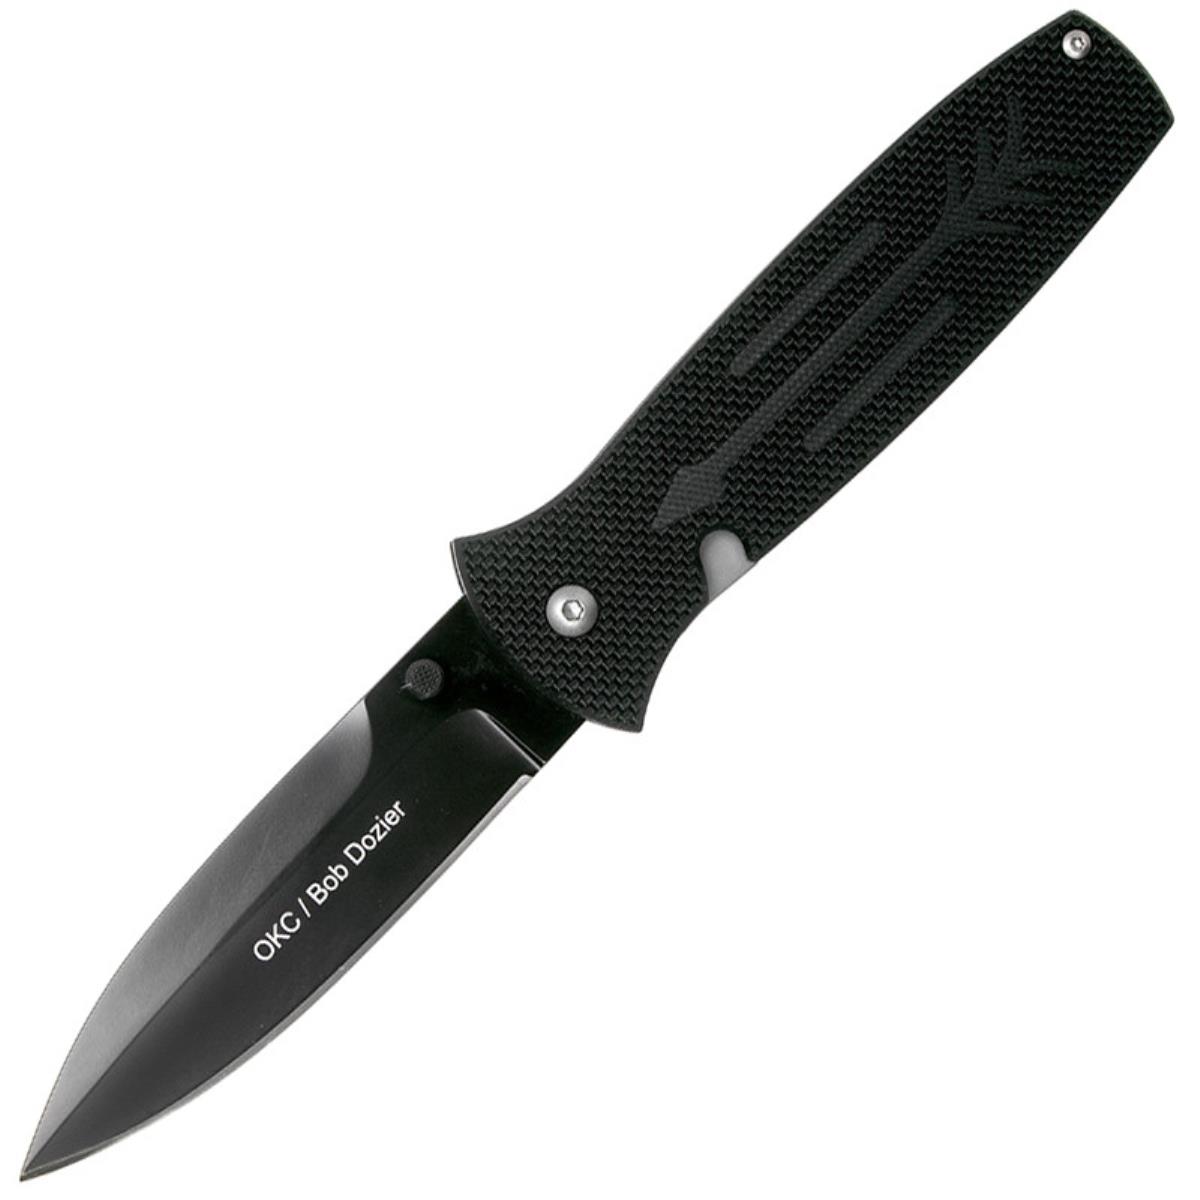 Нож OKC Dozier Arrow складн.,чёрная рукоять, G10, клинок D2, чёрное покрытие (9101)  ONTARIO нож складной ontario rat 1 сталь d2 клинок satin рукоять olive grn